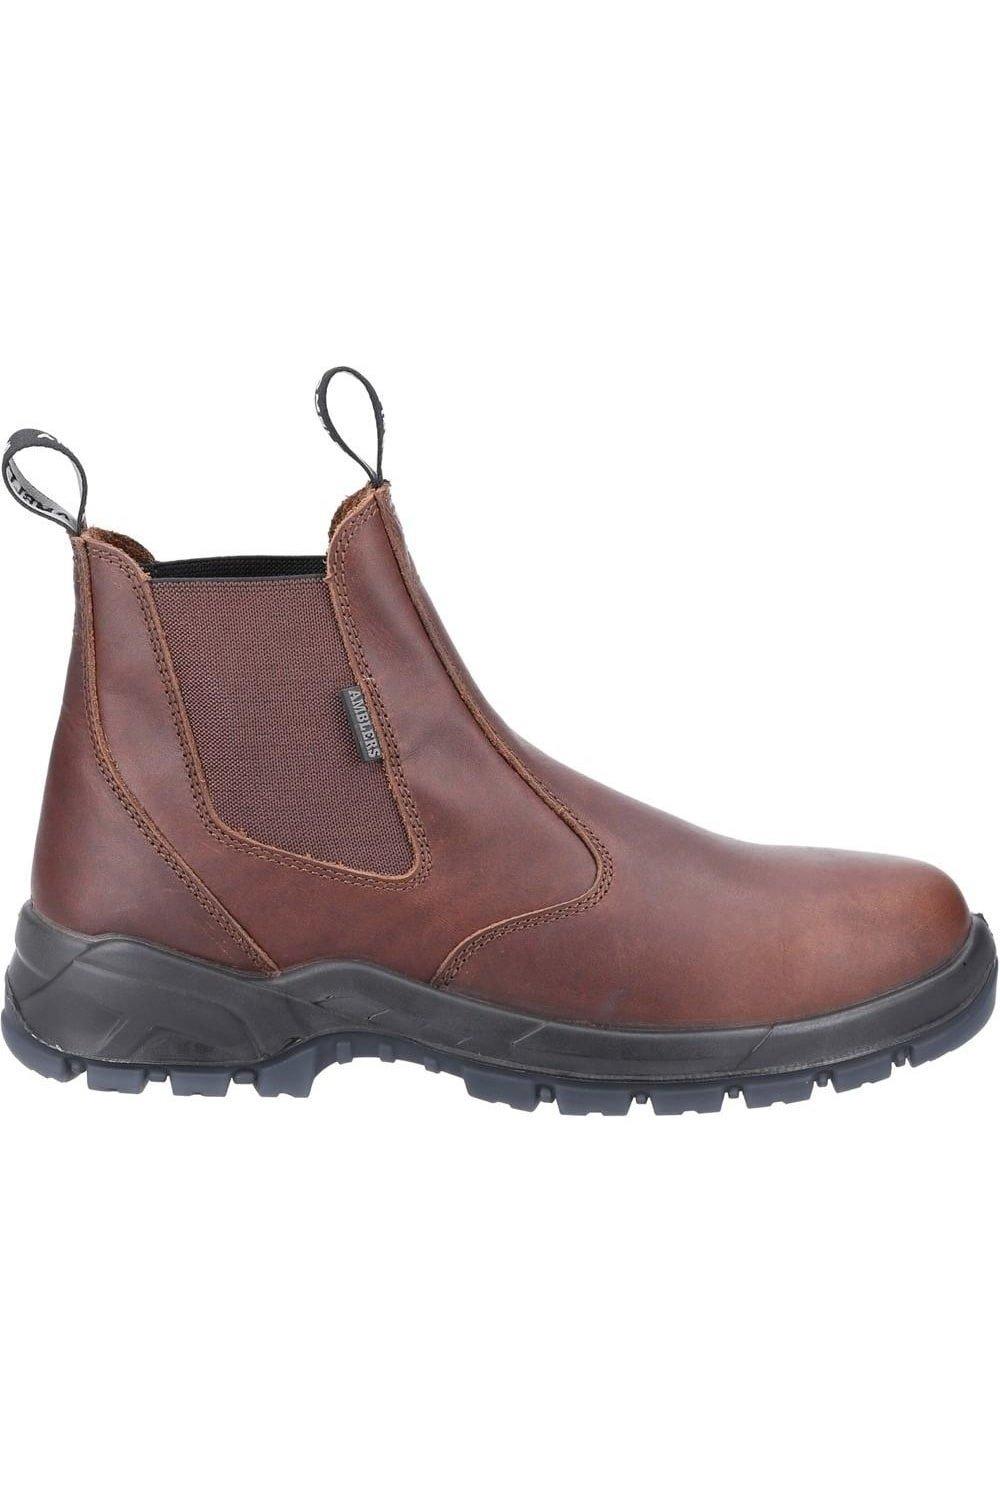 Кожаные защитные ботинки Amblers, коричневый фото